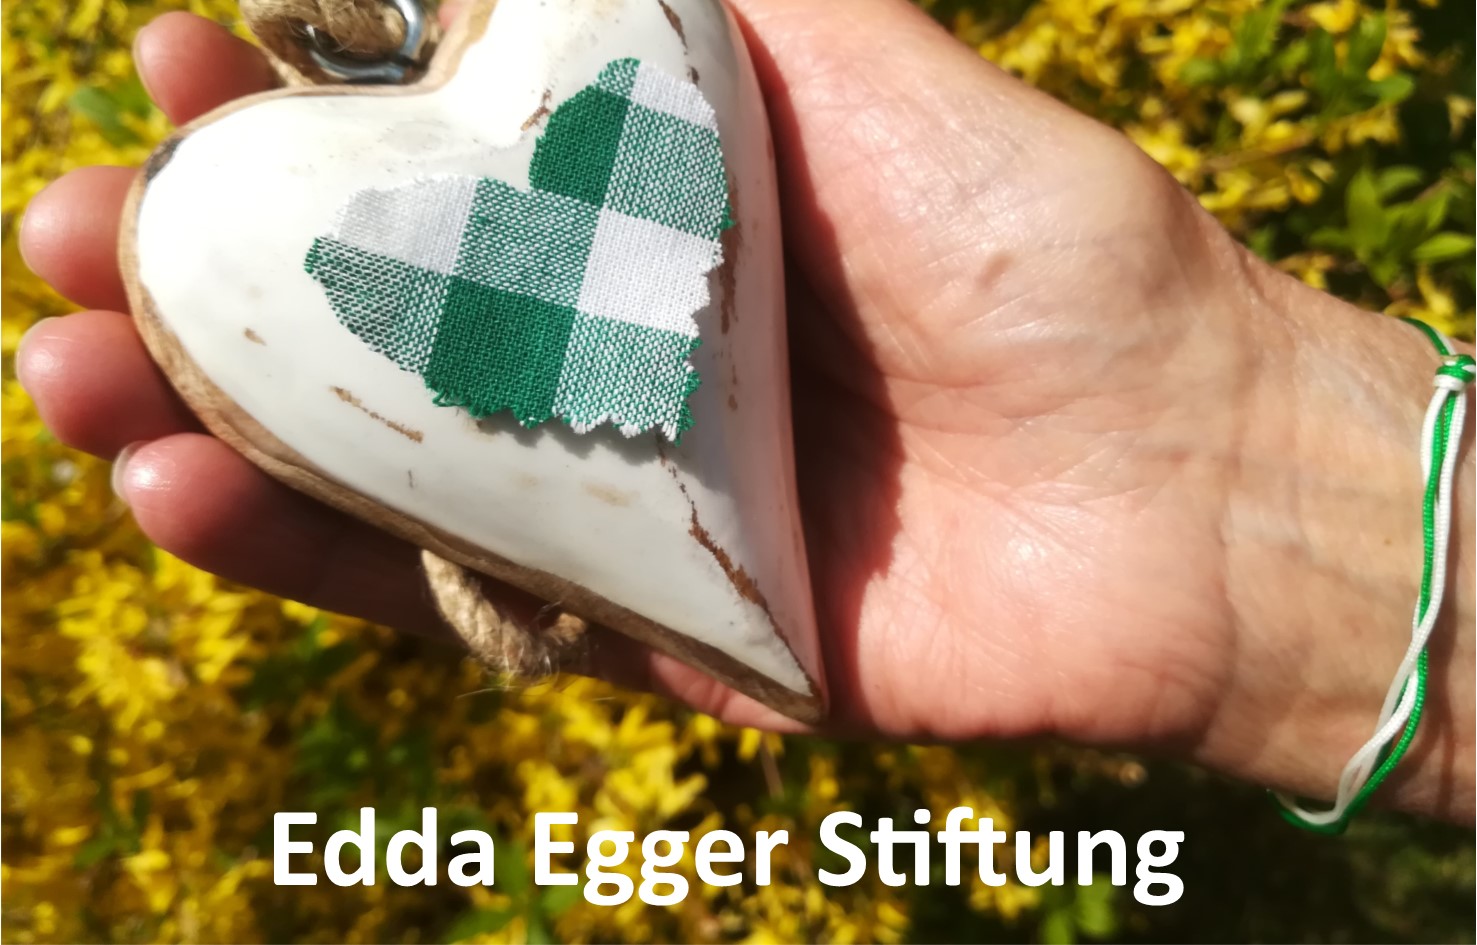 Edda Egger Stiftung